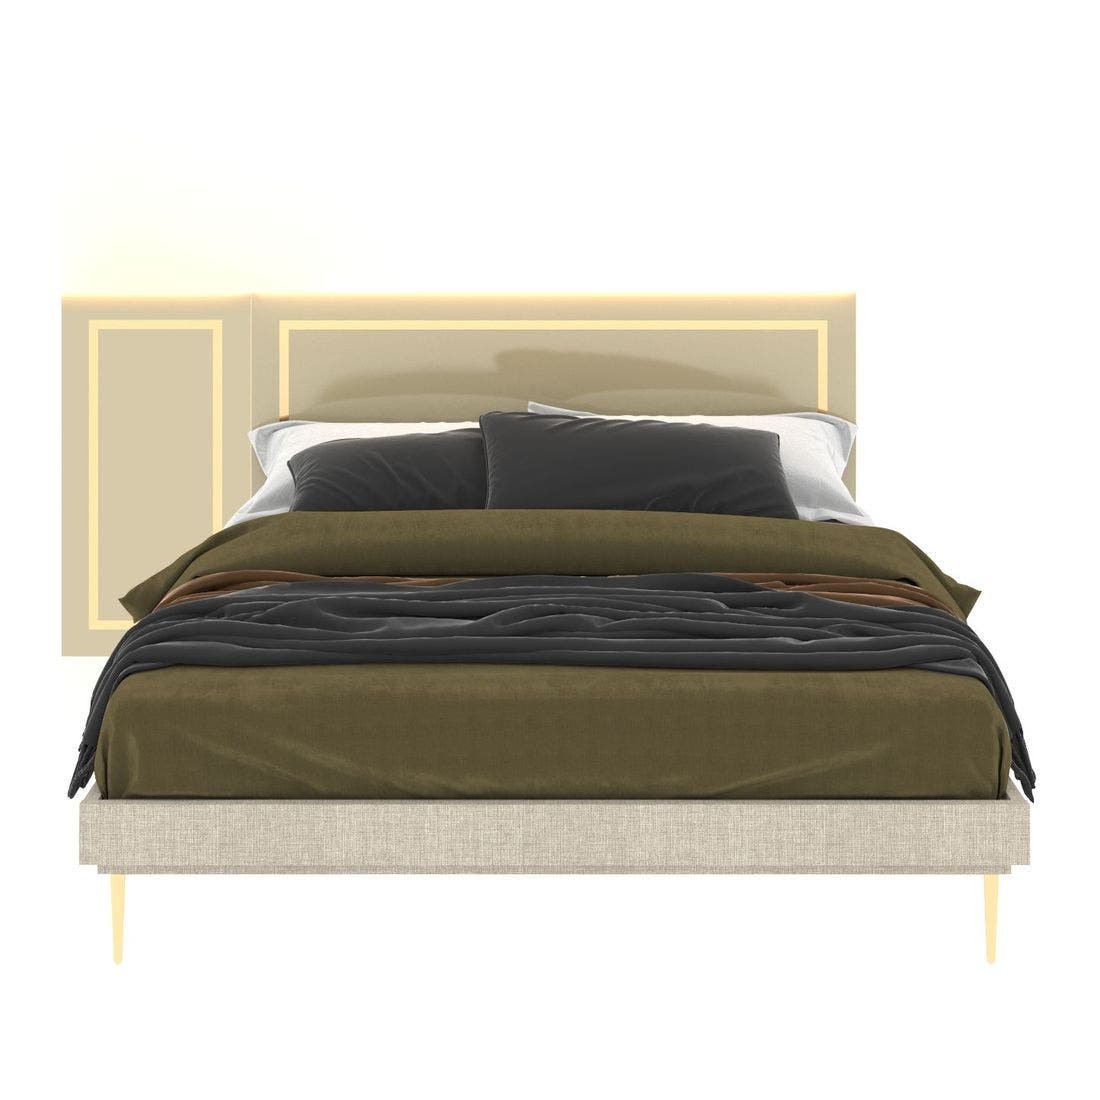 59023218-the-master-furniture-bedroom-furniture-beds-01